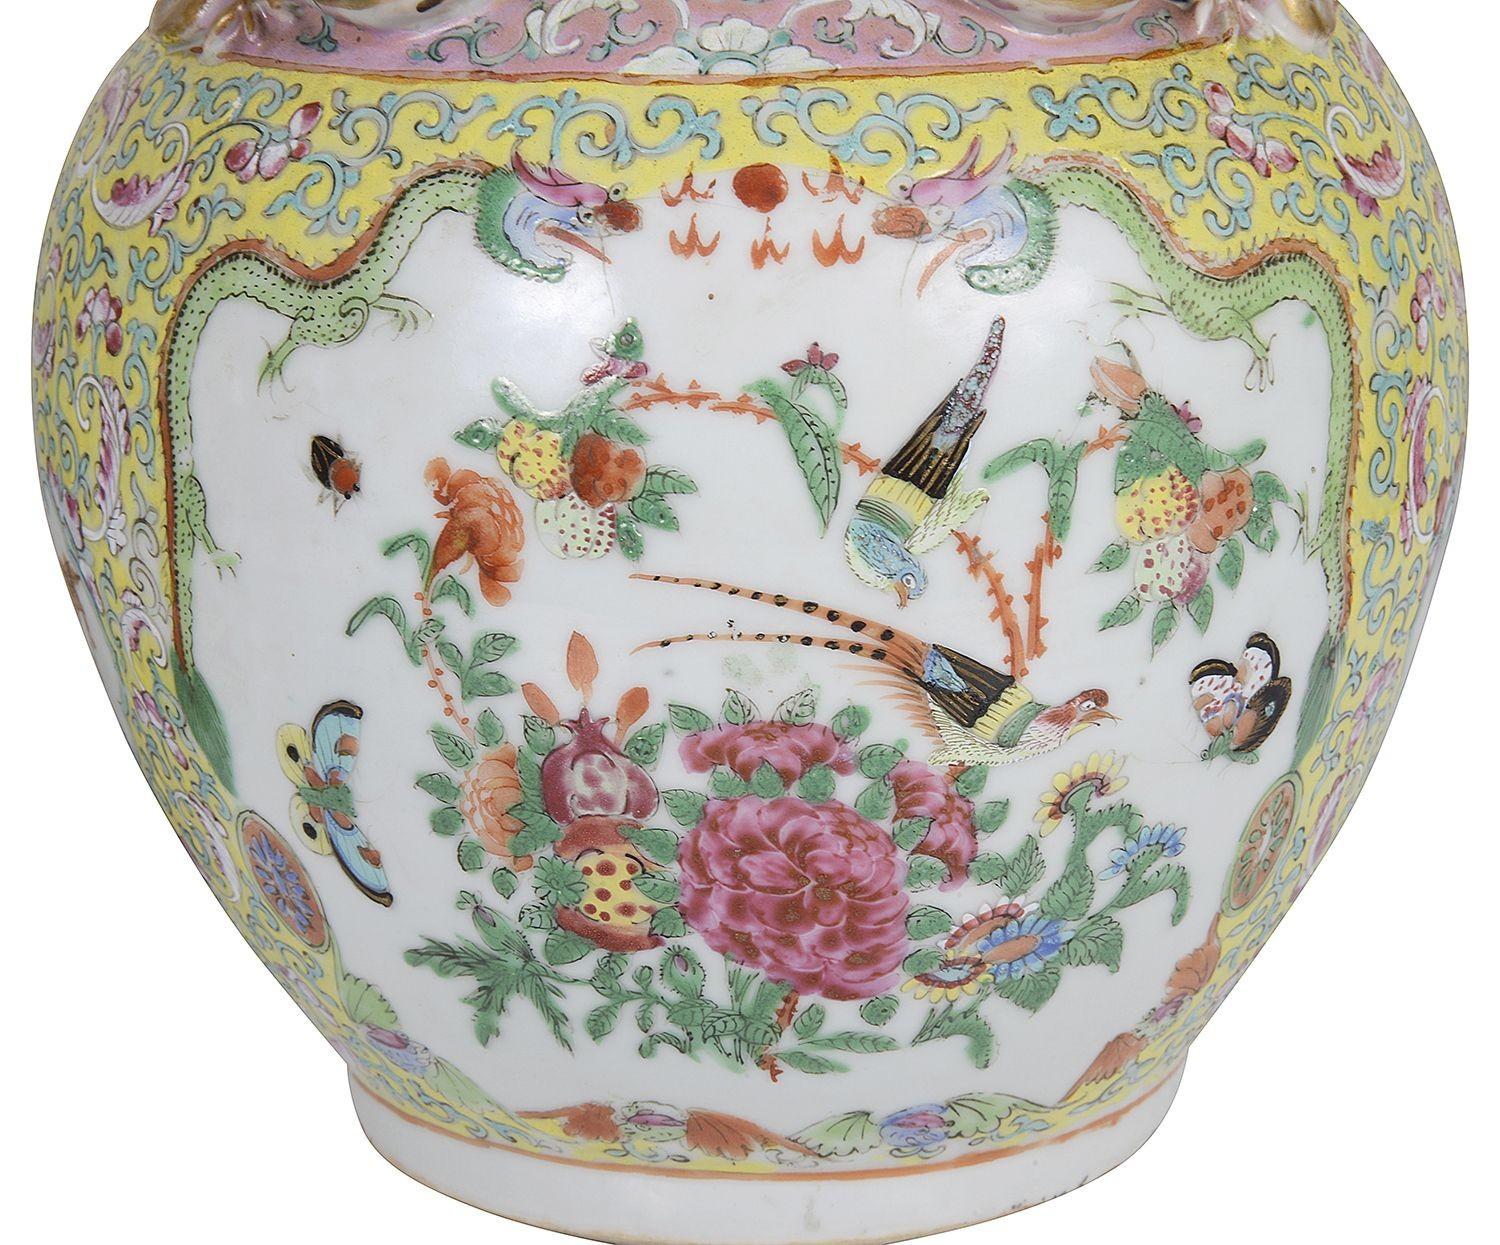 Eine wunderbare Qualität und ungewöhnliche Farbe Paar des 19. Jahrhunderts Chinese Rose Medaillon Porzellan Vasen / Lampen. Mit diesem seltenen gelben Grund mit dem klassischen kantonesischen Blumendekor, exotischen Vögeln und mythischen vergoldeten